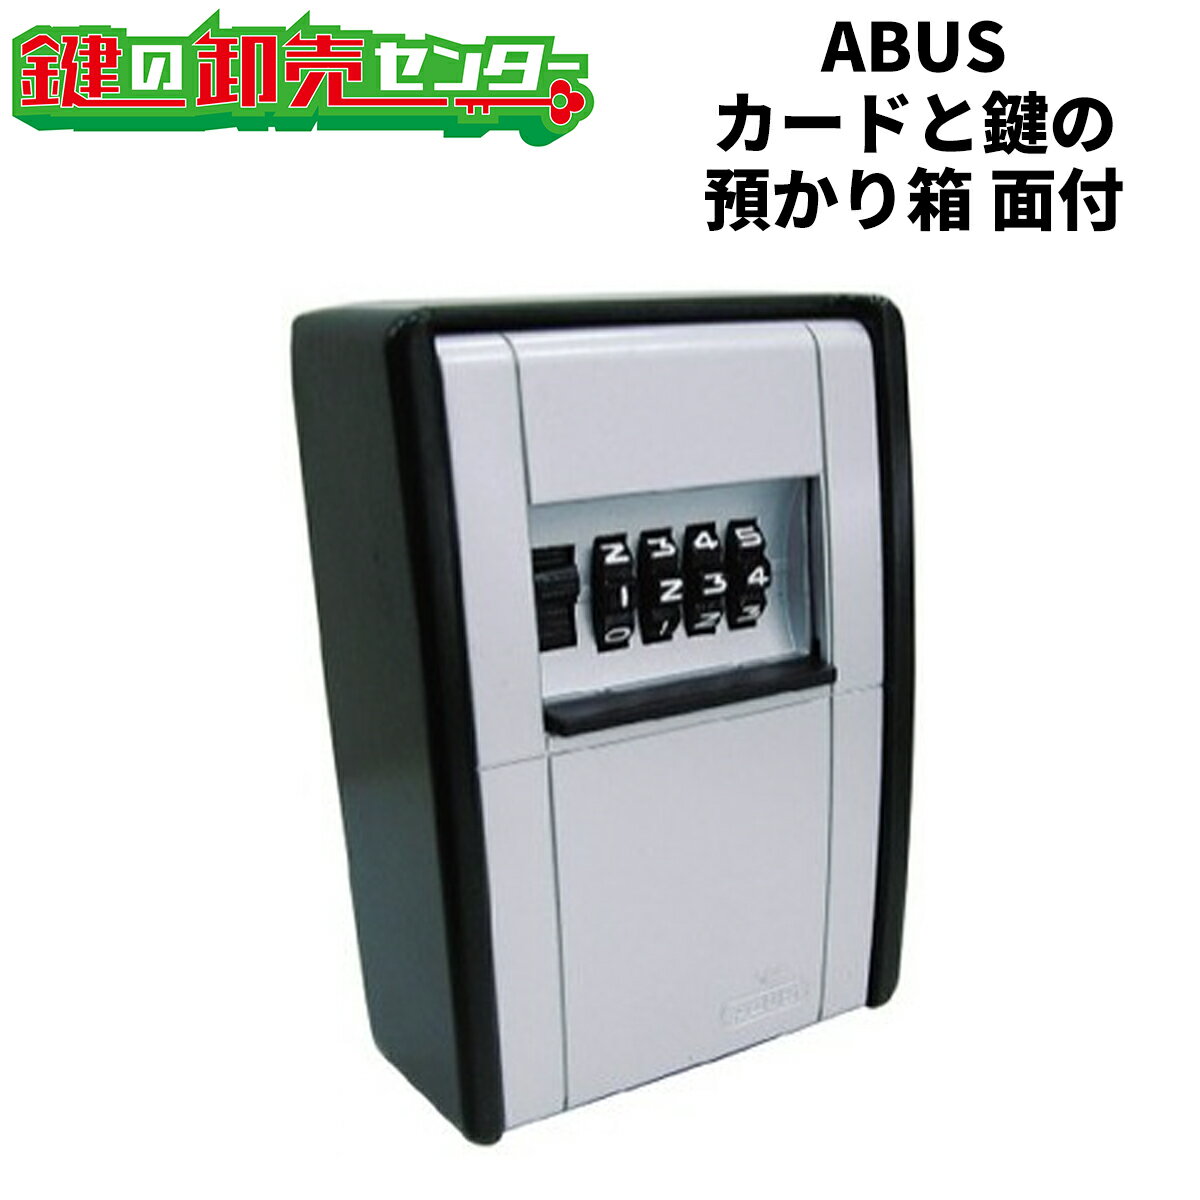 ABUS アバス カードとカギの預かり箱